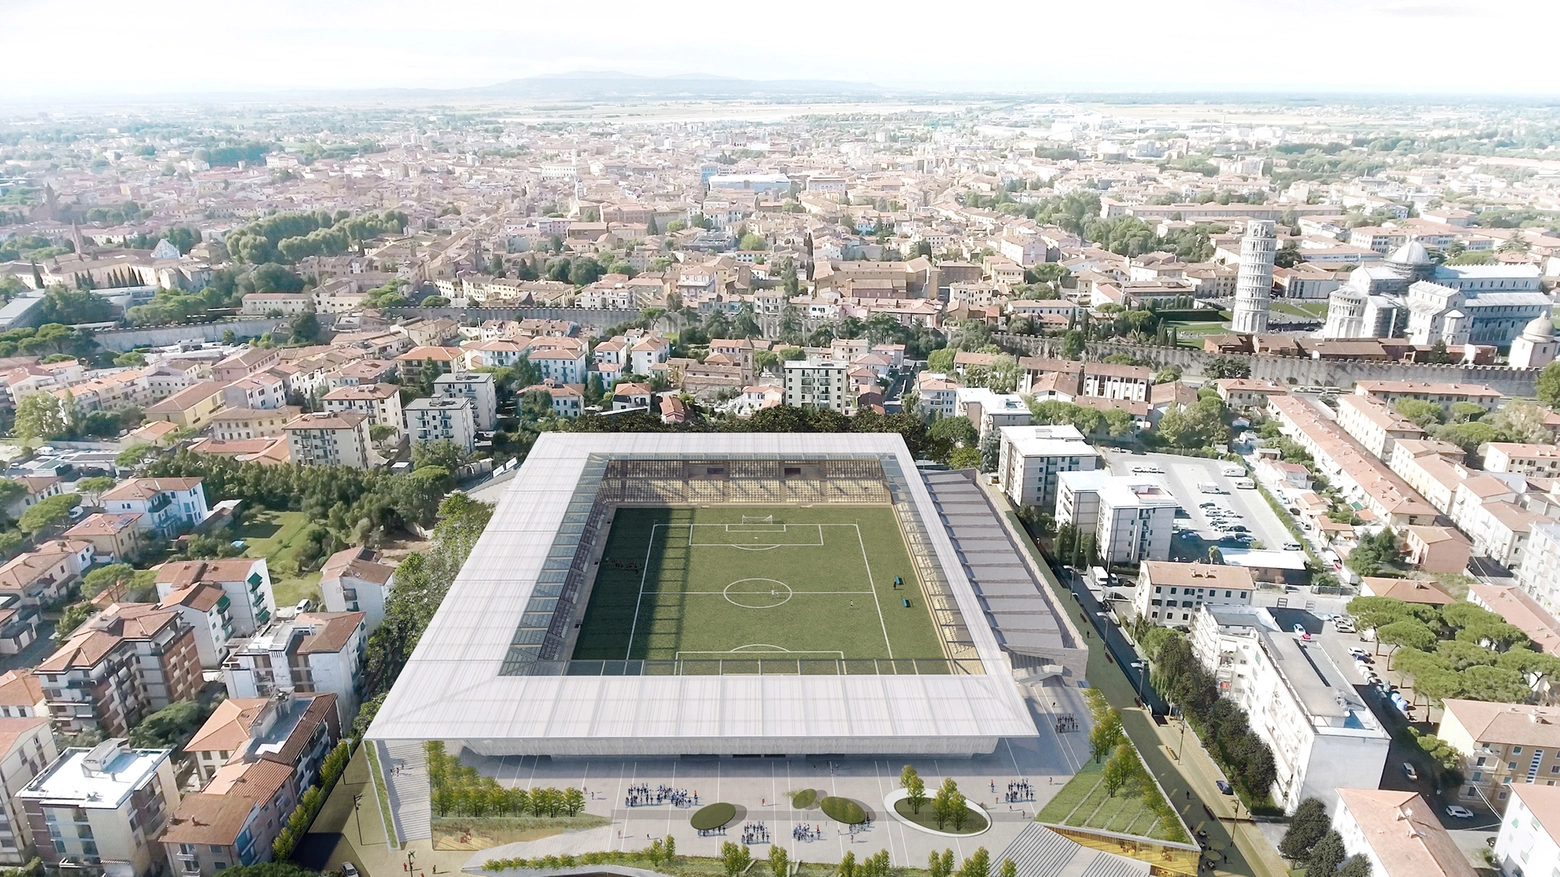 Nuova Arena Garibaldi: il progetto di ristrutturazione